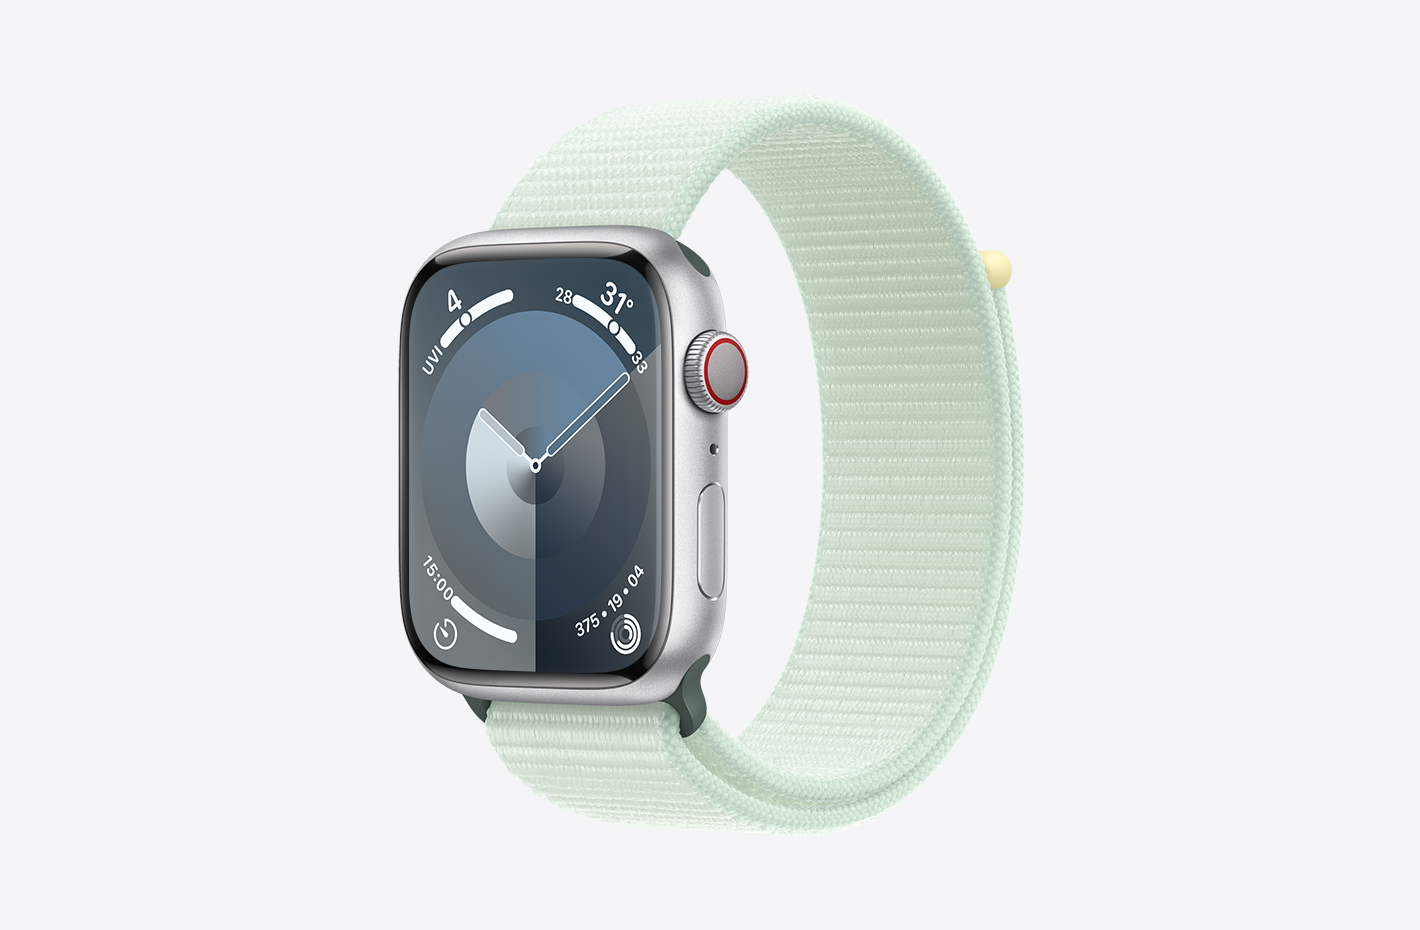 Apple Watch vỏ Nhôm Màu Bạc có bề mặt nhám và hình ảnh nhìn nghiêng của Dây Quấn Thể Thao Màu Bạc Hà Nhạt (màu xanh lá), có nút cài băng dính dán và kiểu bện nylon hai lớp